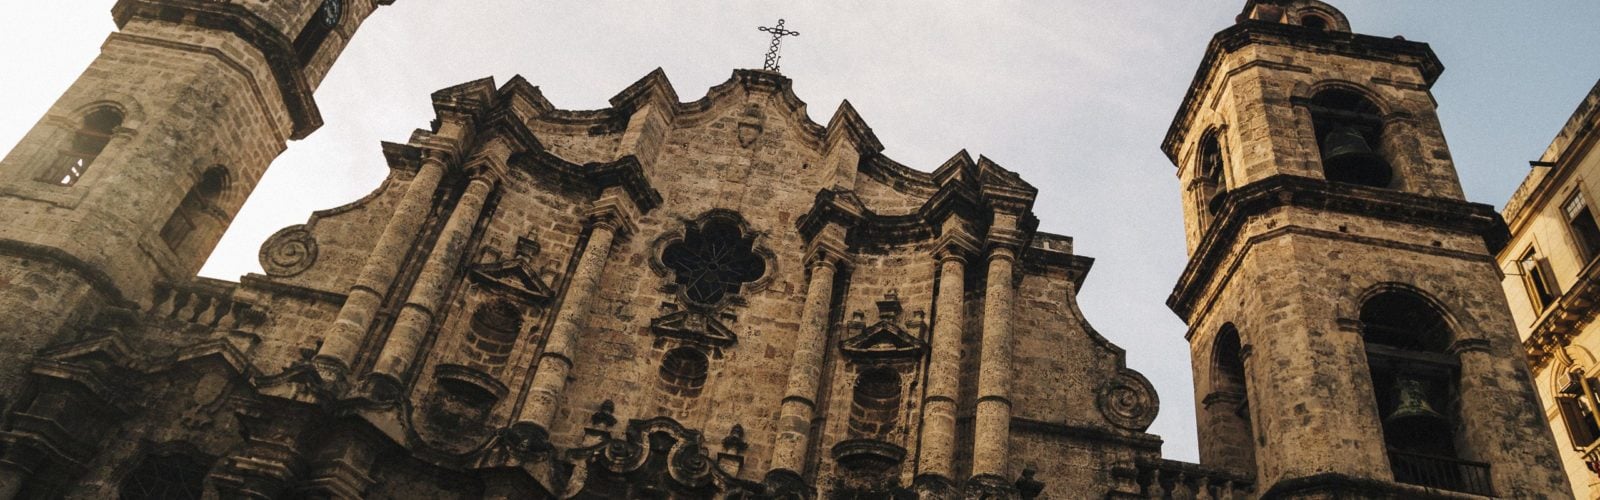 havana-san-cristobel-cathedral